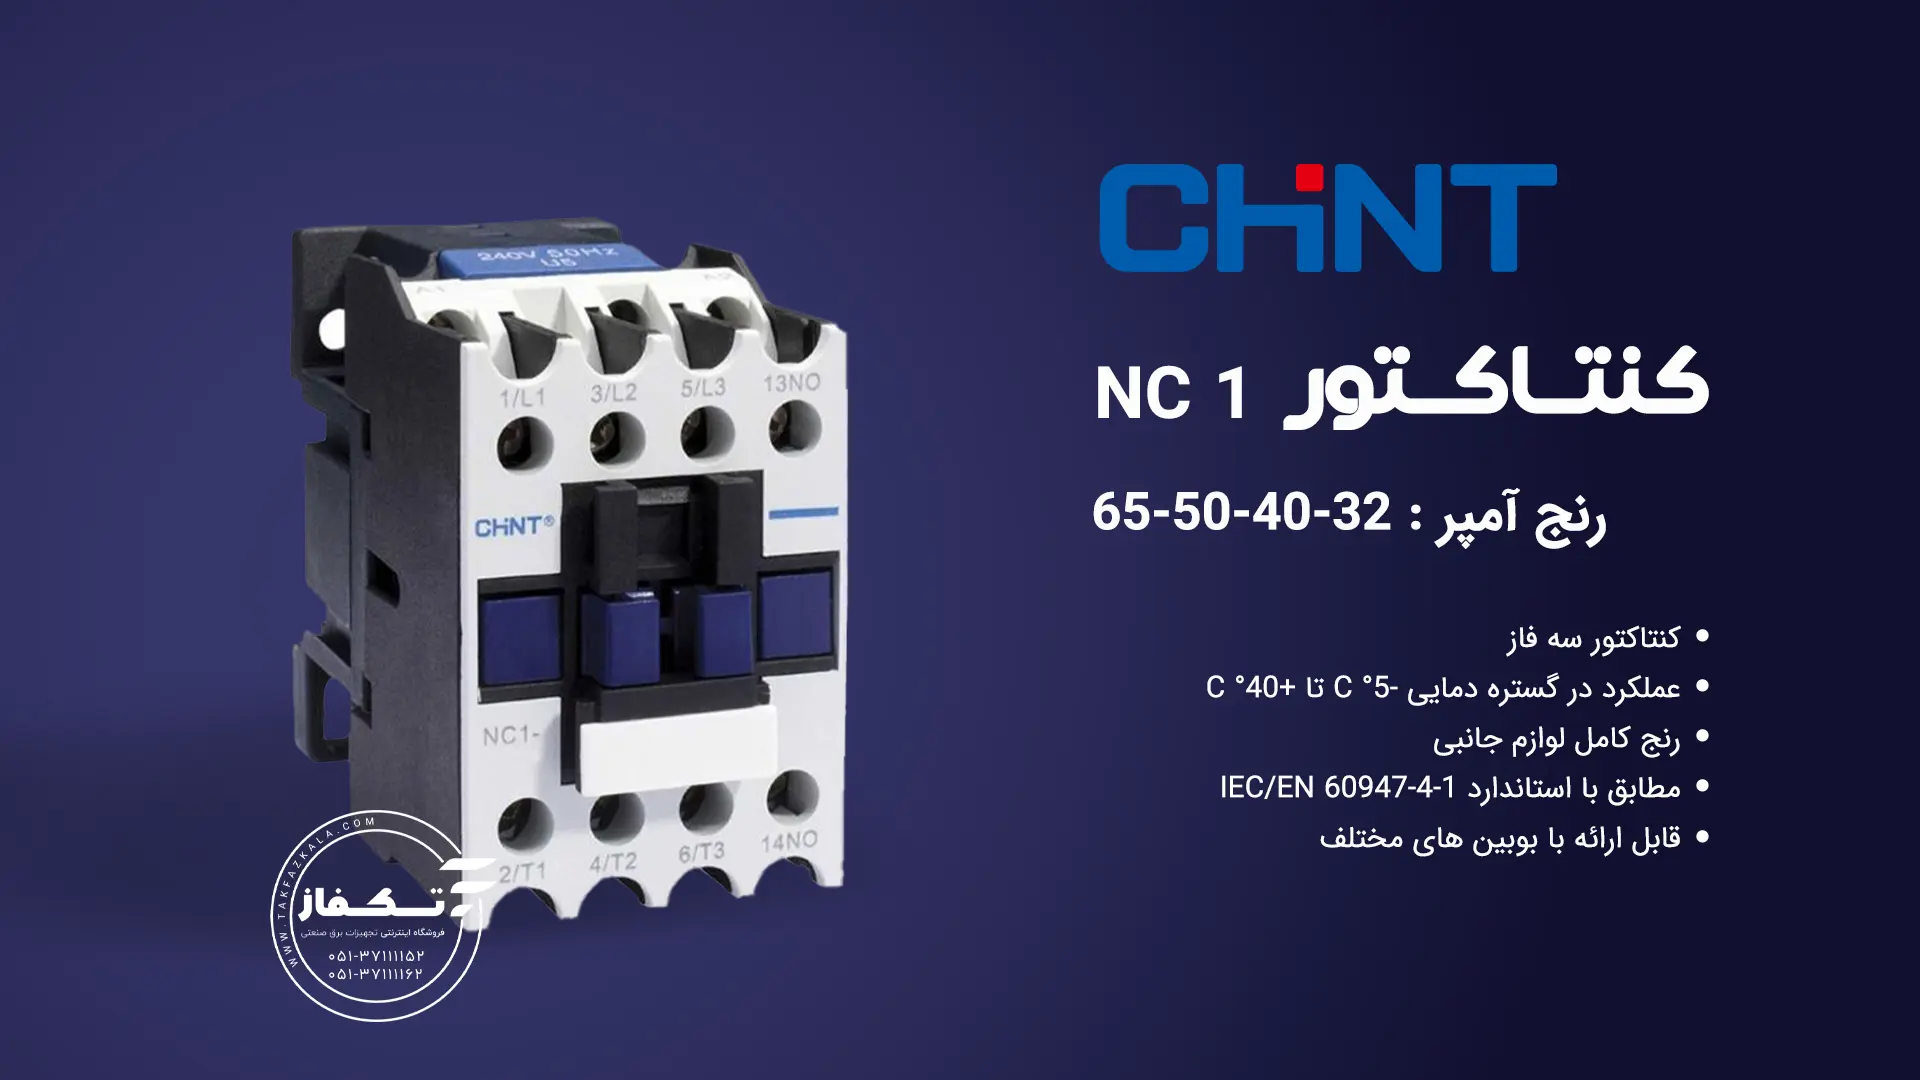 Contactor 32 amps NC1-cint